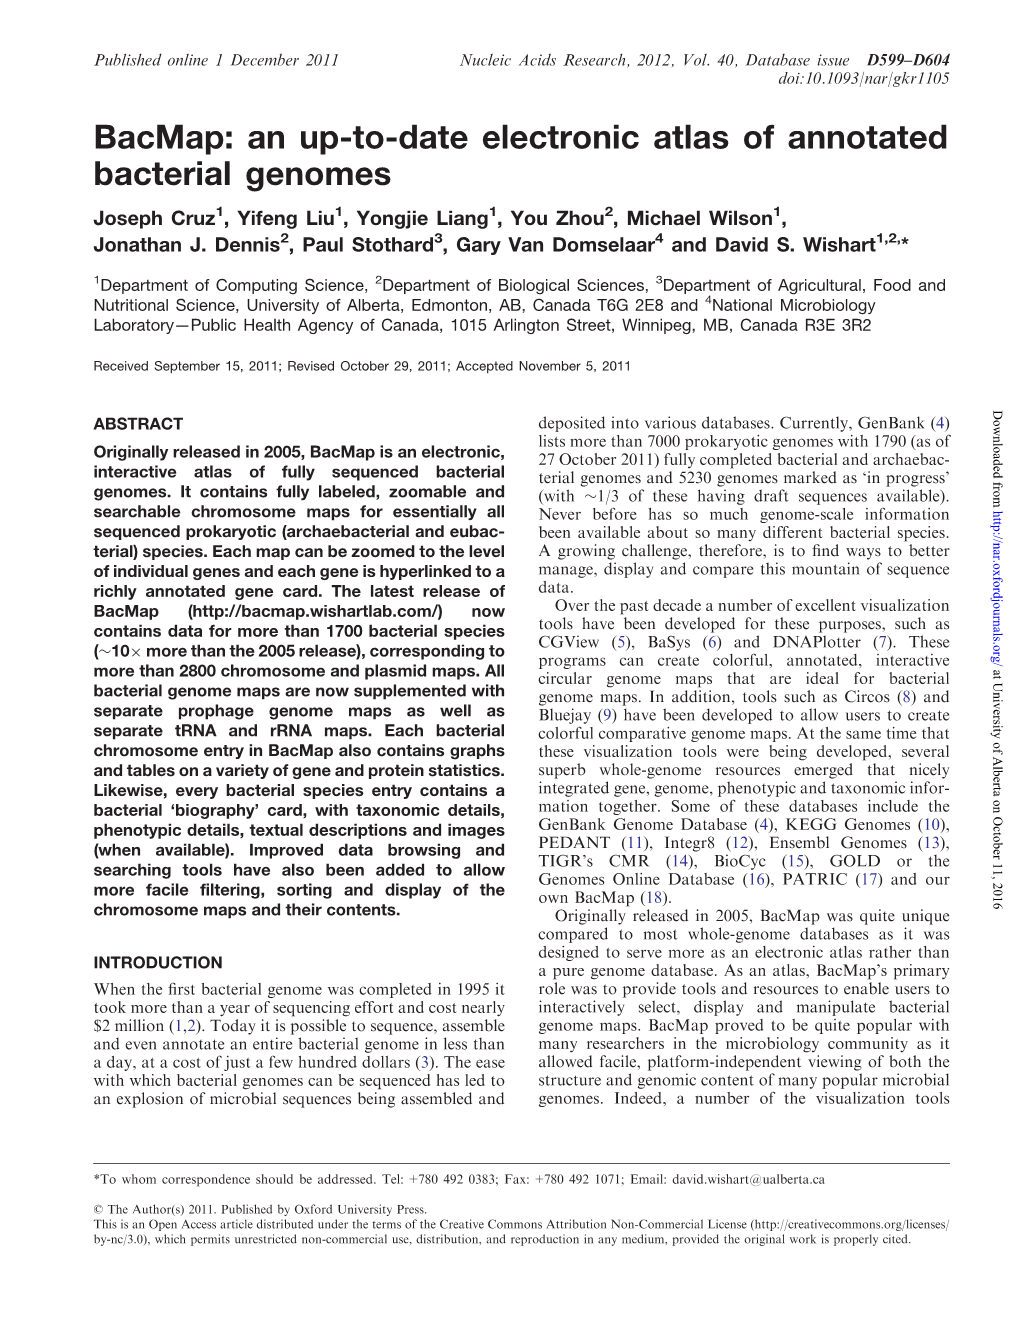 Bacmap: an Up-To-Date Electronic Atlas of Annotated Bacterial Genomes Joseph Cruz1, Yifeng Liu1, Yongjie Liang1, You Zhou2, Michael Wilson1, Jonathan J